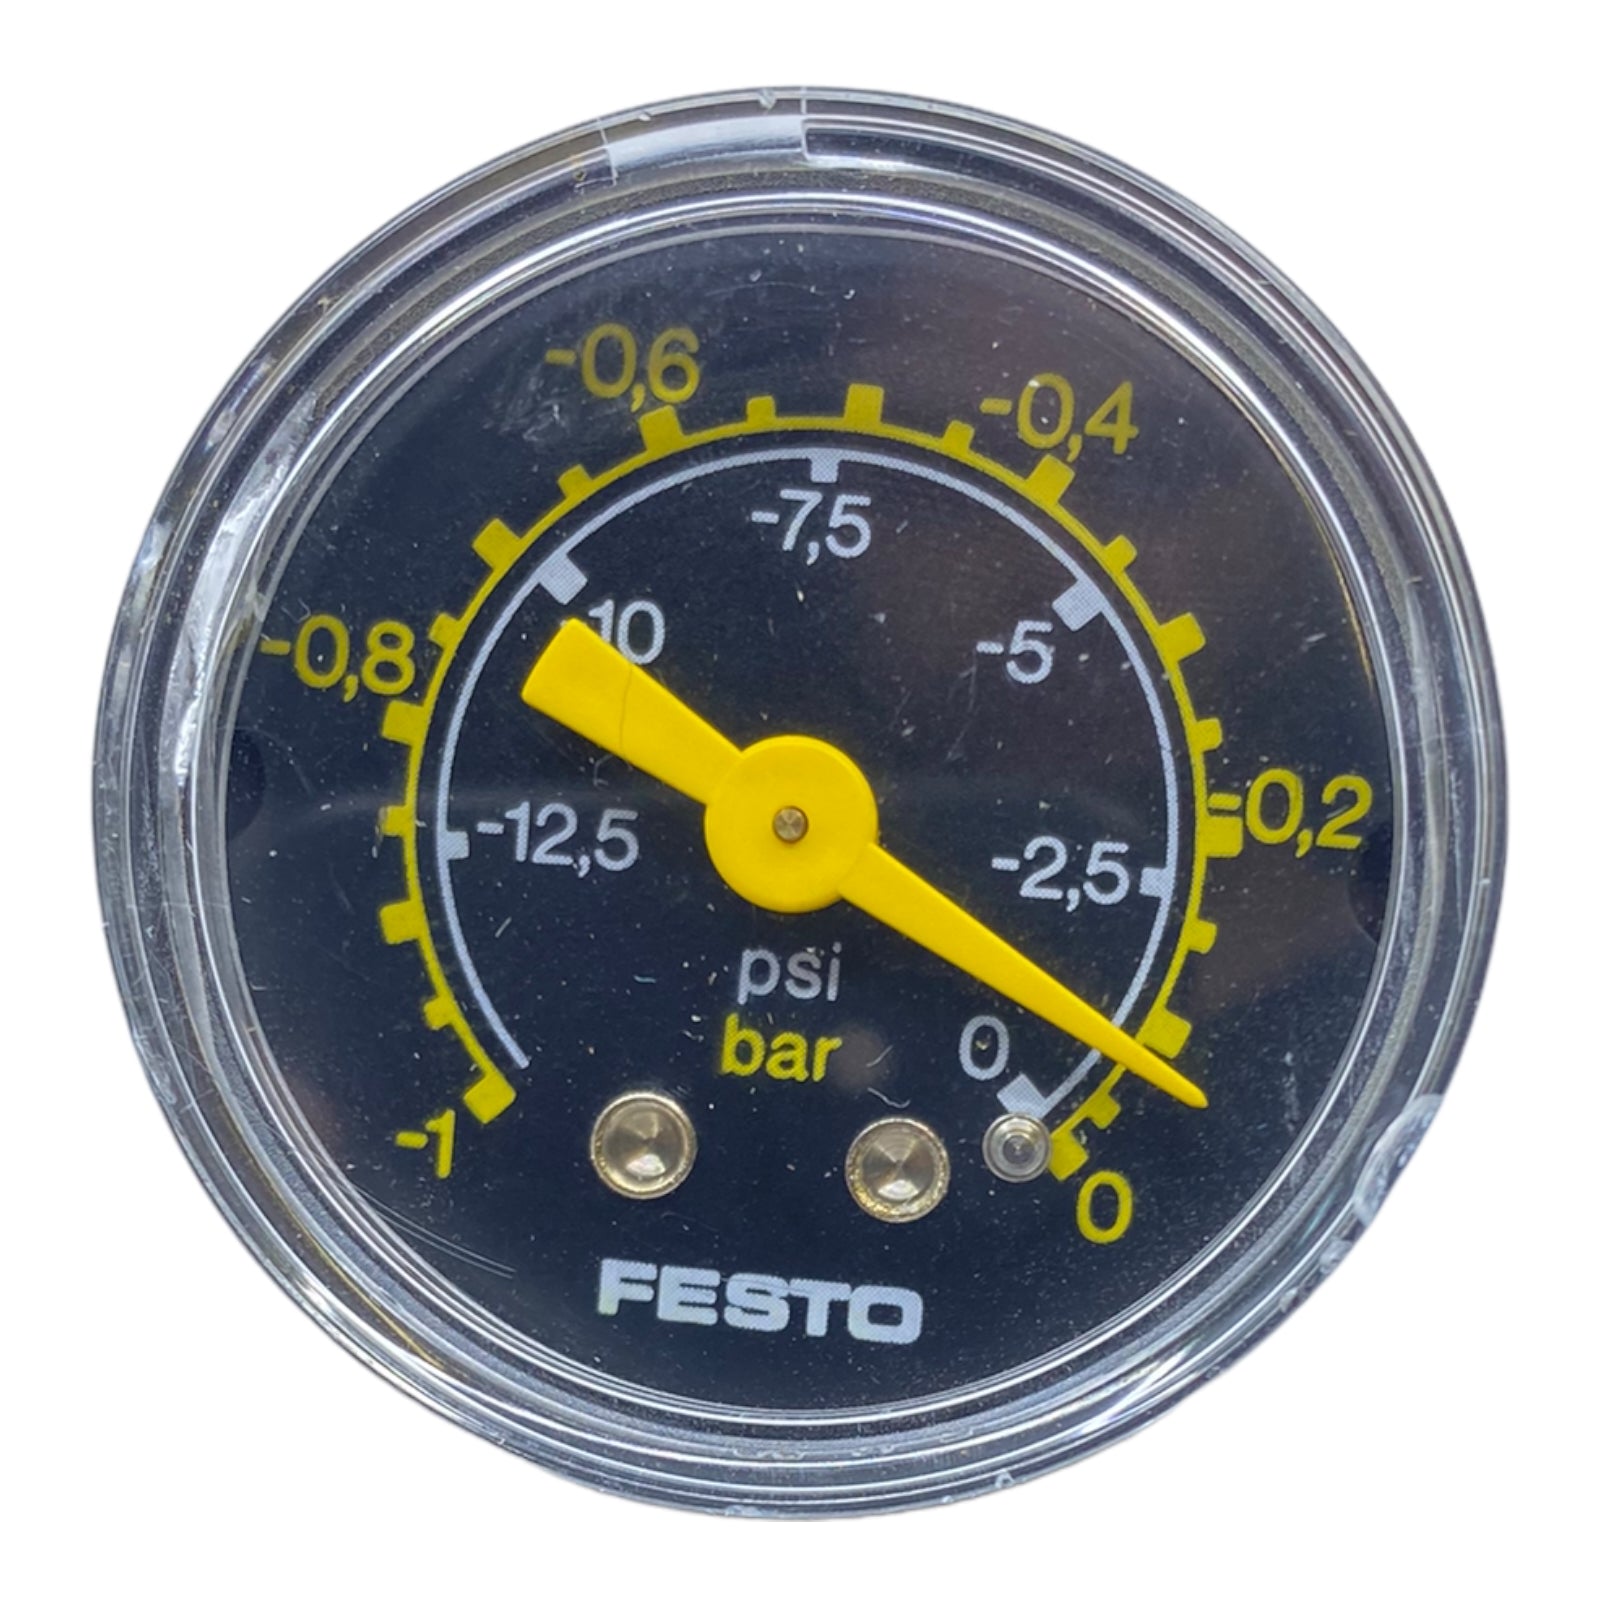 Festo -1 bis 0 bar Manometer schwarz